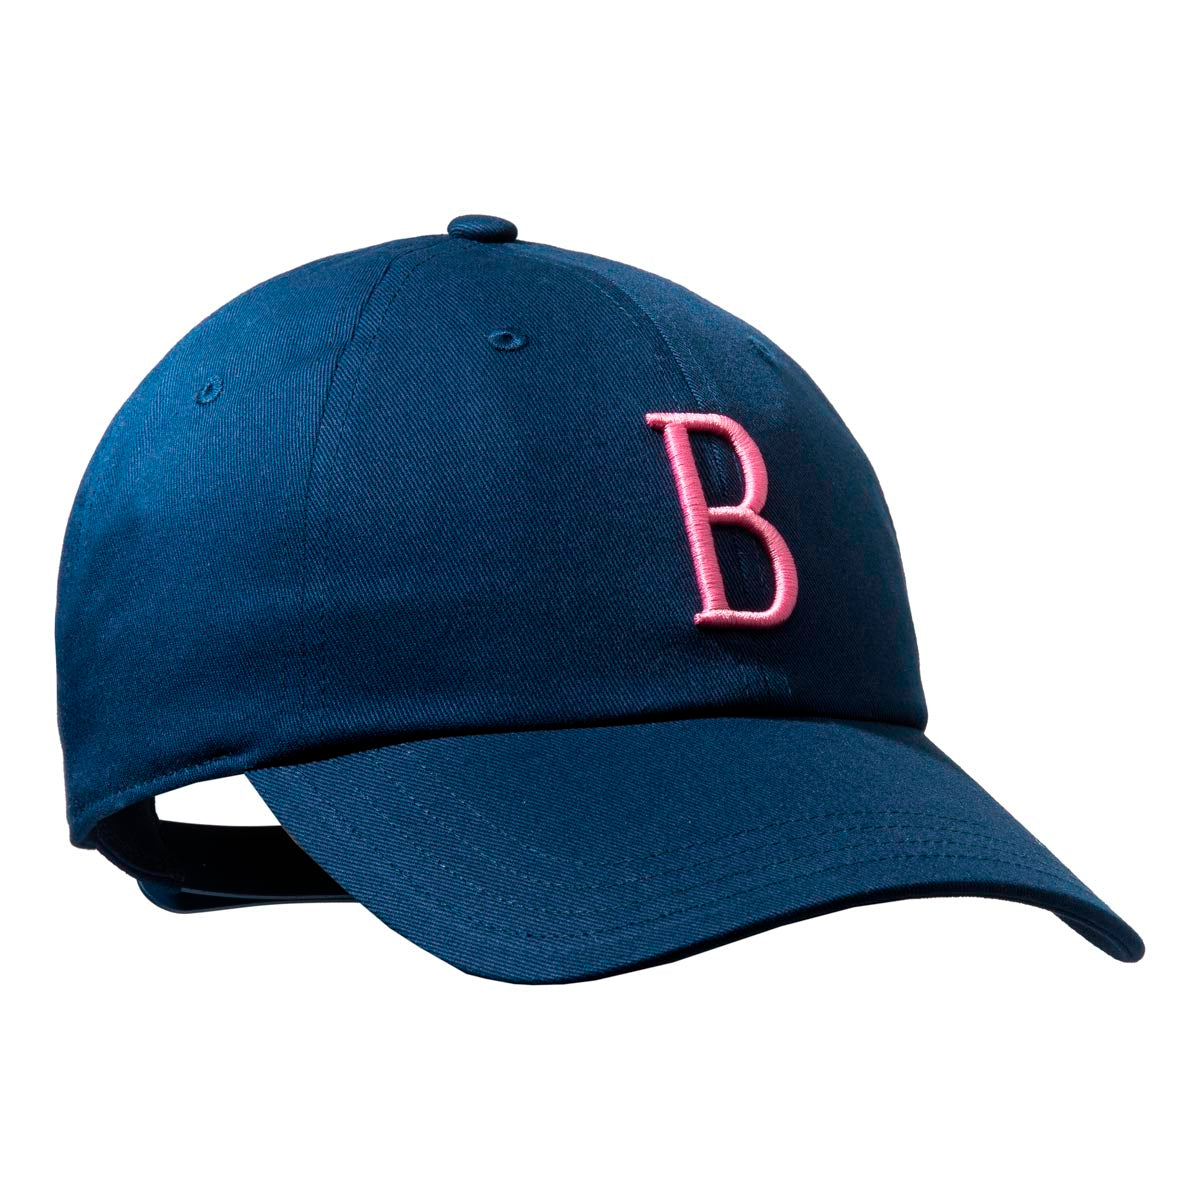 Beretta Big B Cap - Blue & Pink